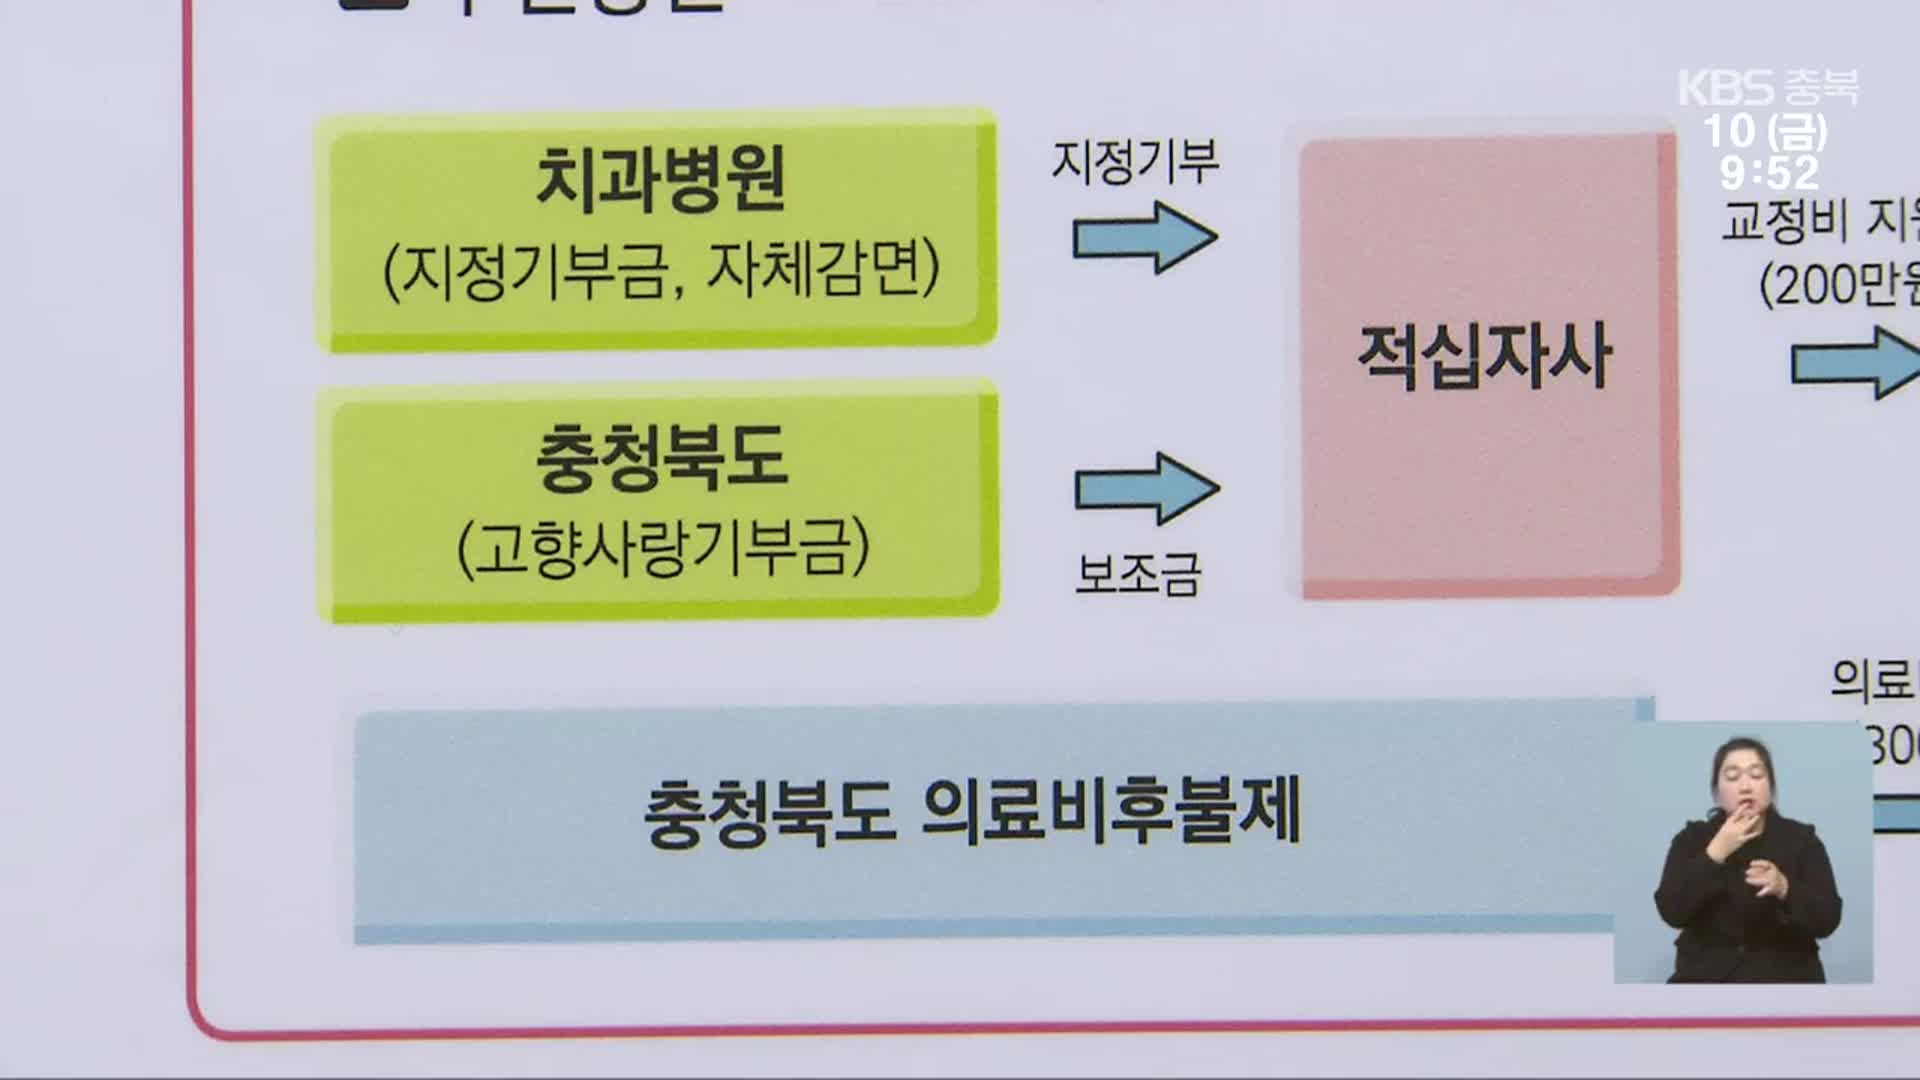 충북 고향사랑기부 1호 ‘의료비 후불제’…범위 대폭 확대